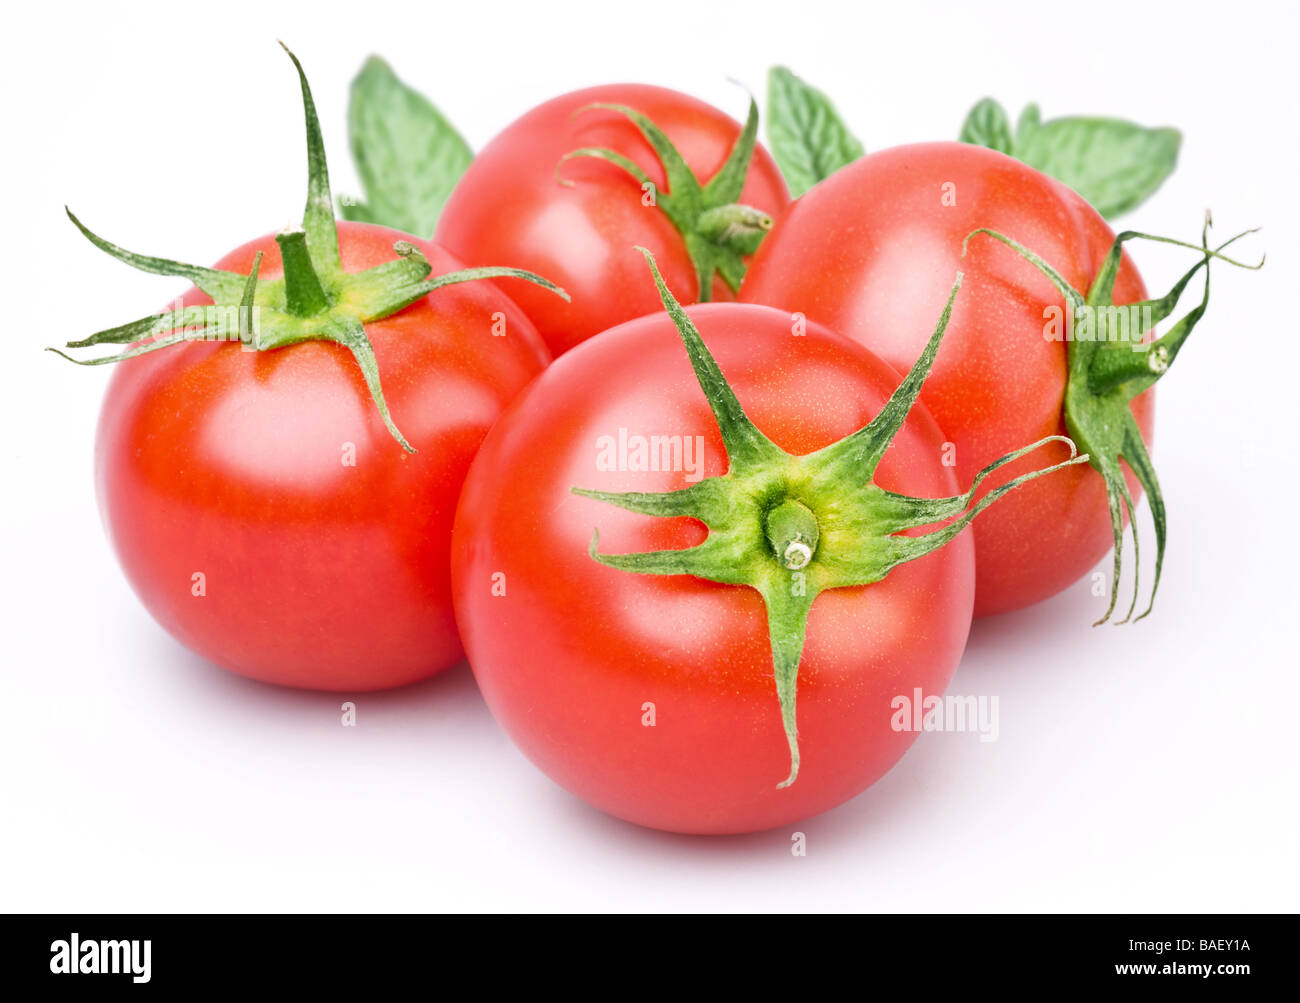 Tomaten-Objekt auf einem weißen Hintergrund Stockfoto